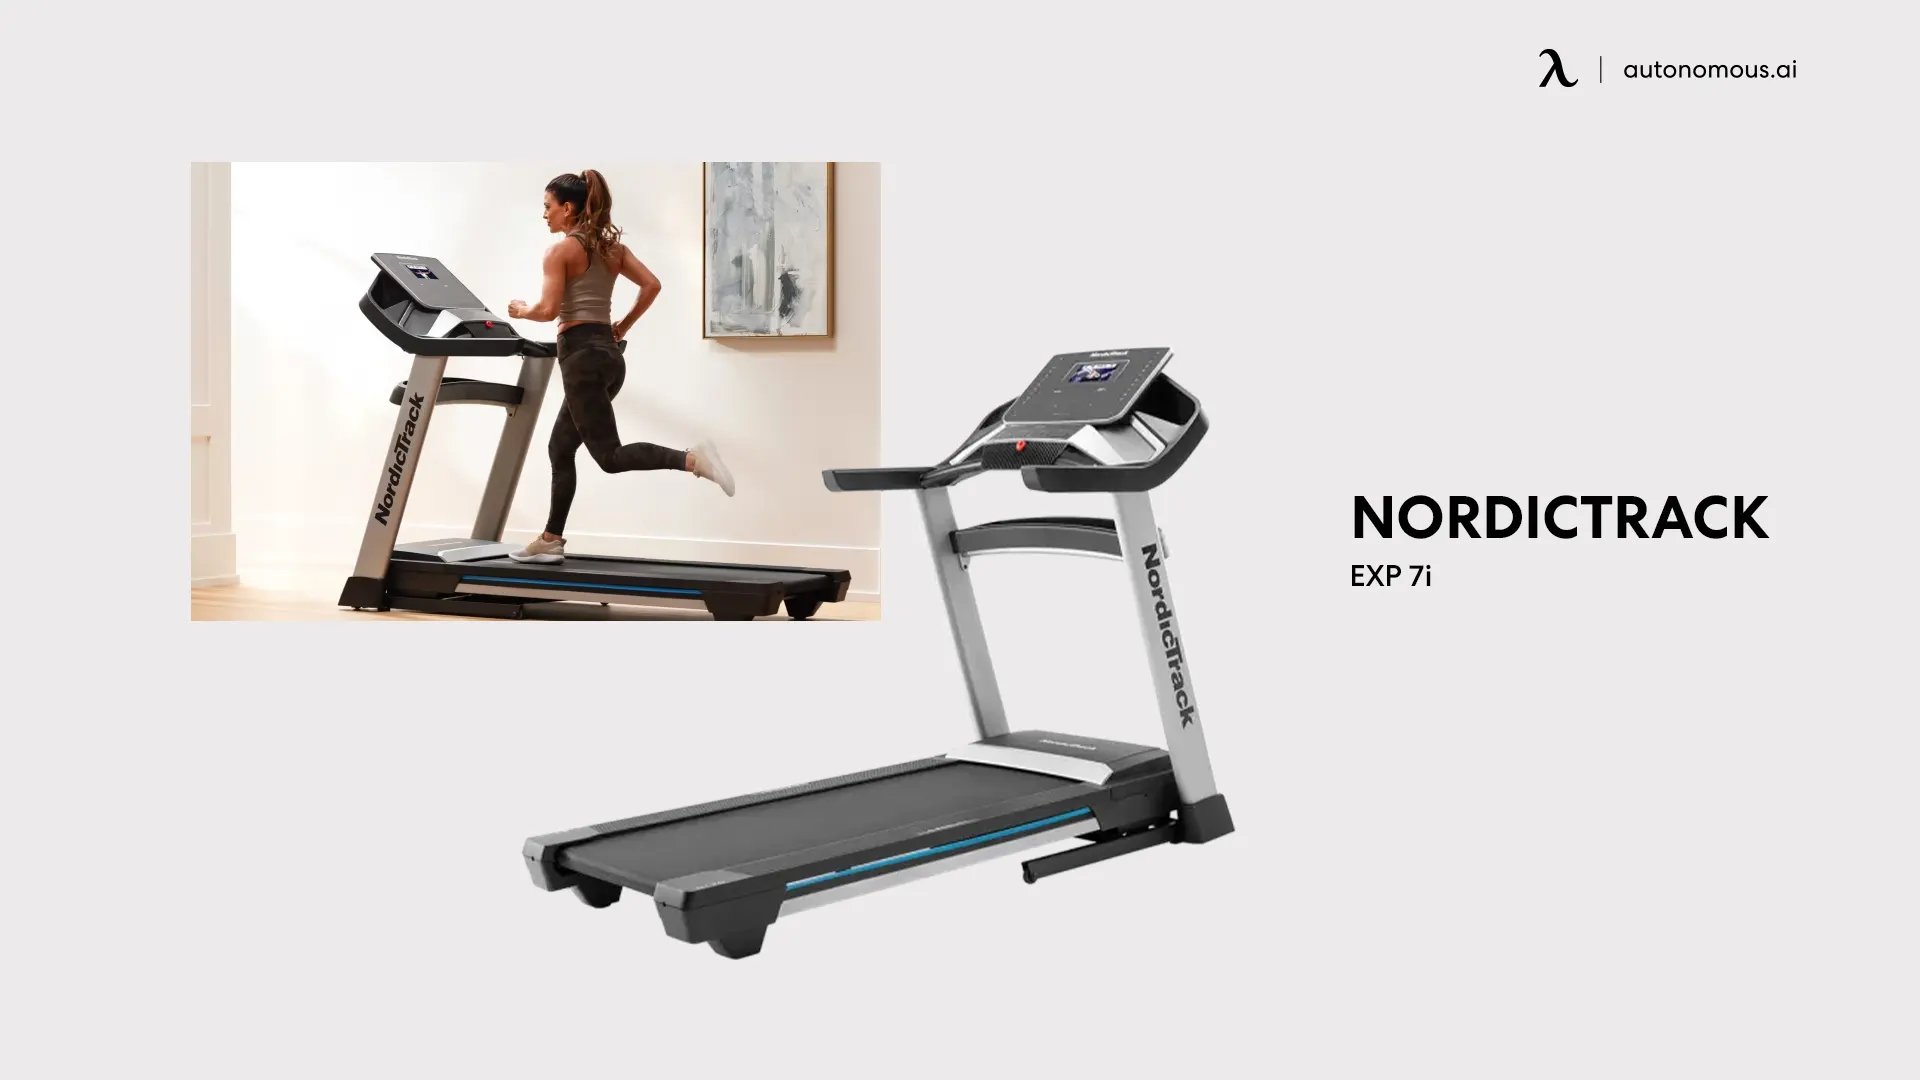 NordicTrack Exp 7i electric treadmill